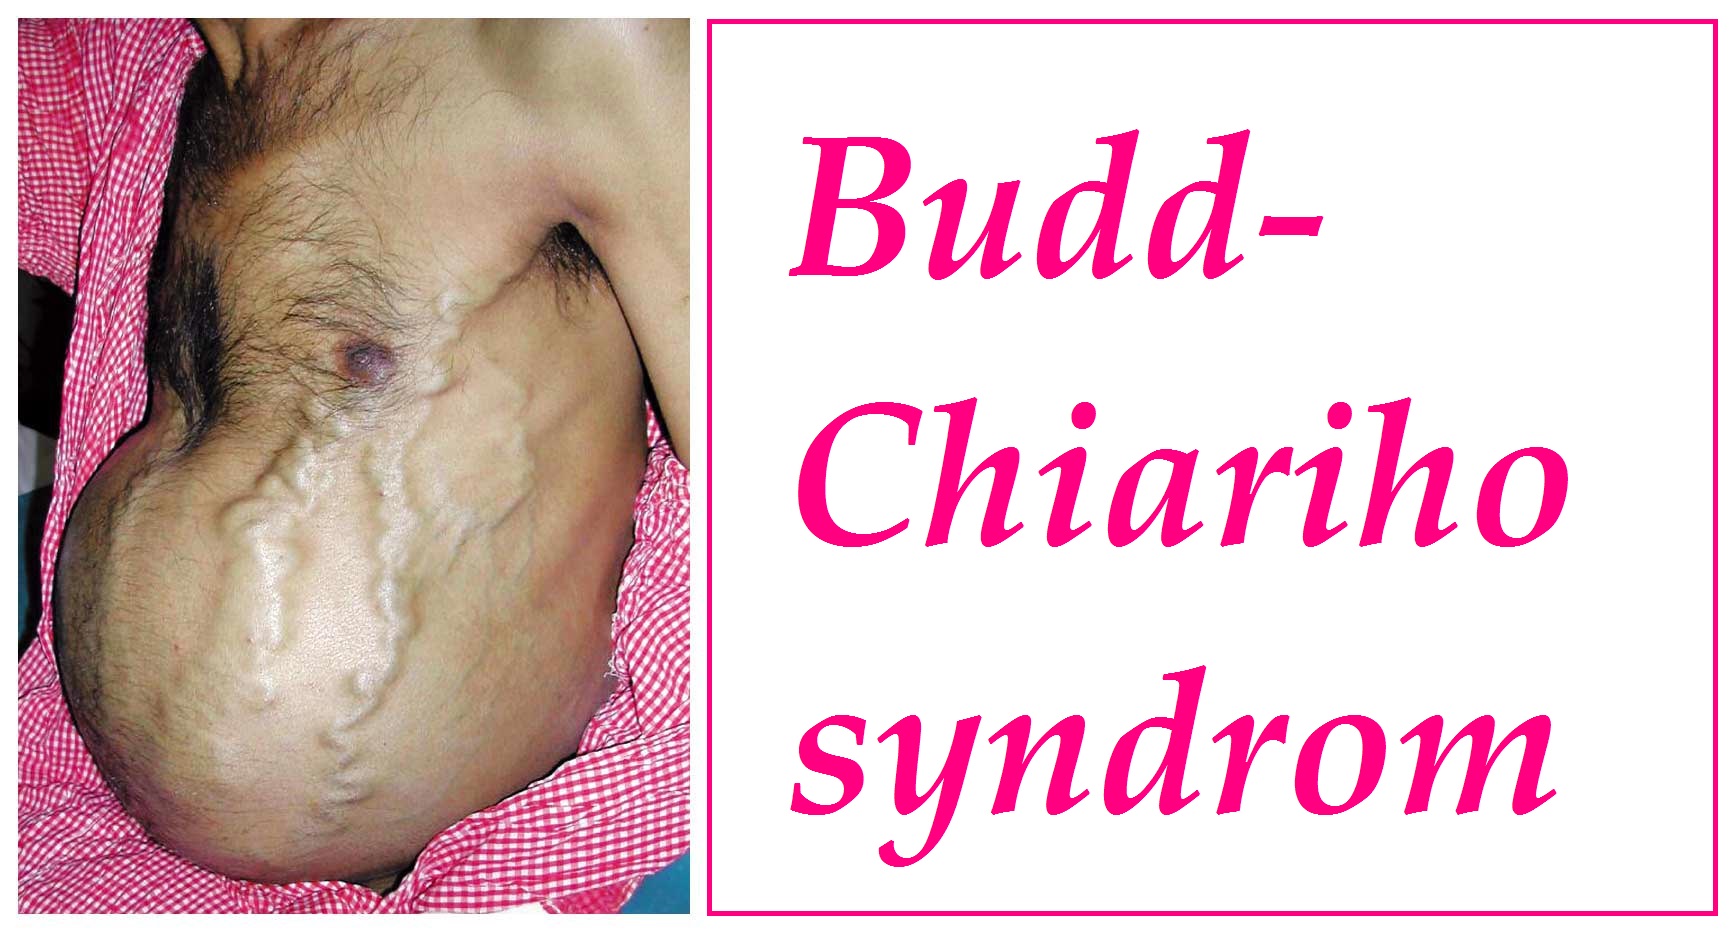 budd-chiariho-syndrom-priznaky-projevy-symptomy